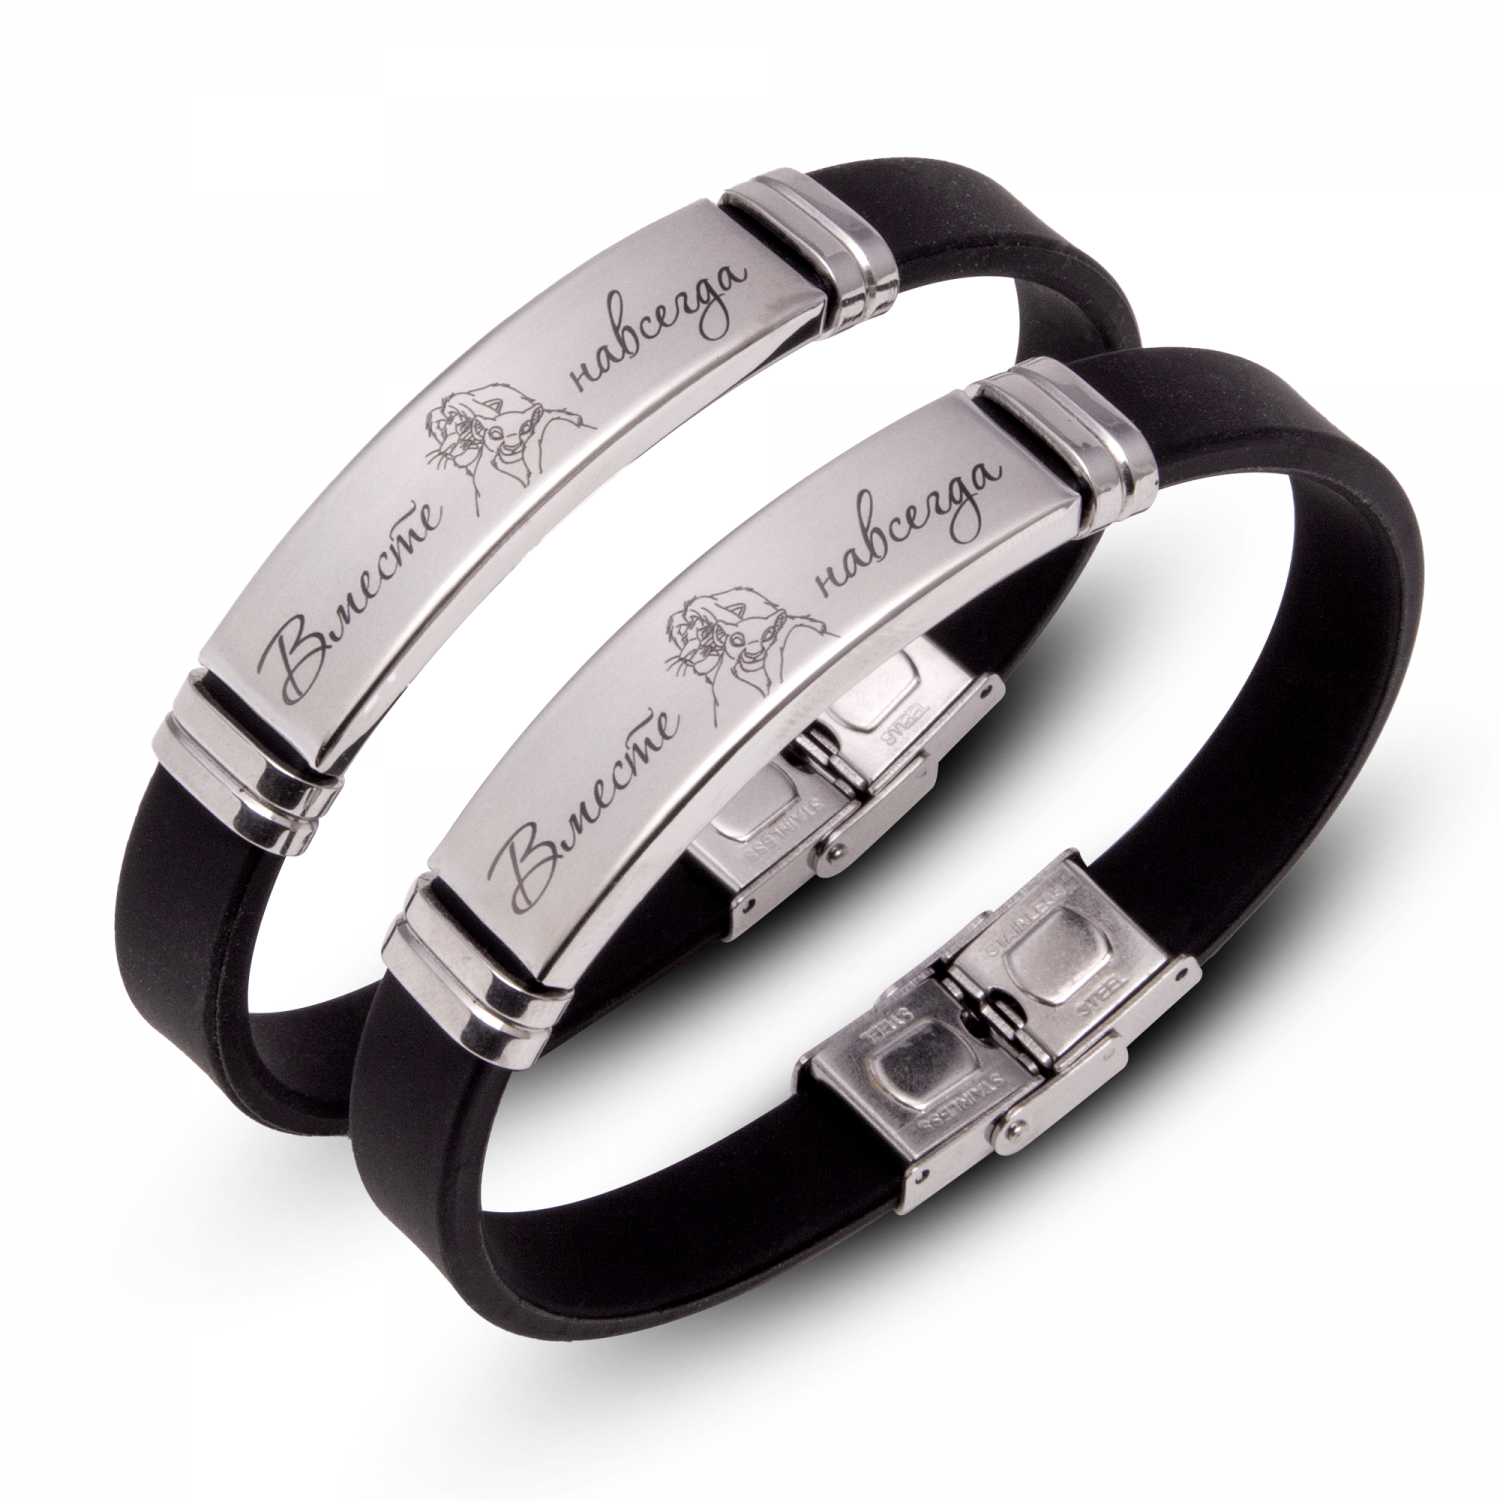 Парные каучуковые браслеты с индивидуальной гравировкой – купить парные каучуковые браслеты в интернет-магазине «Гравиров».